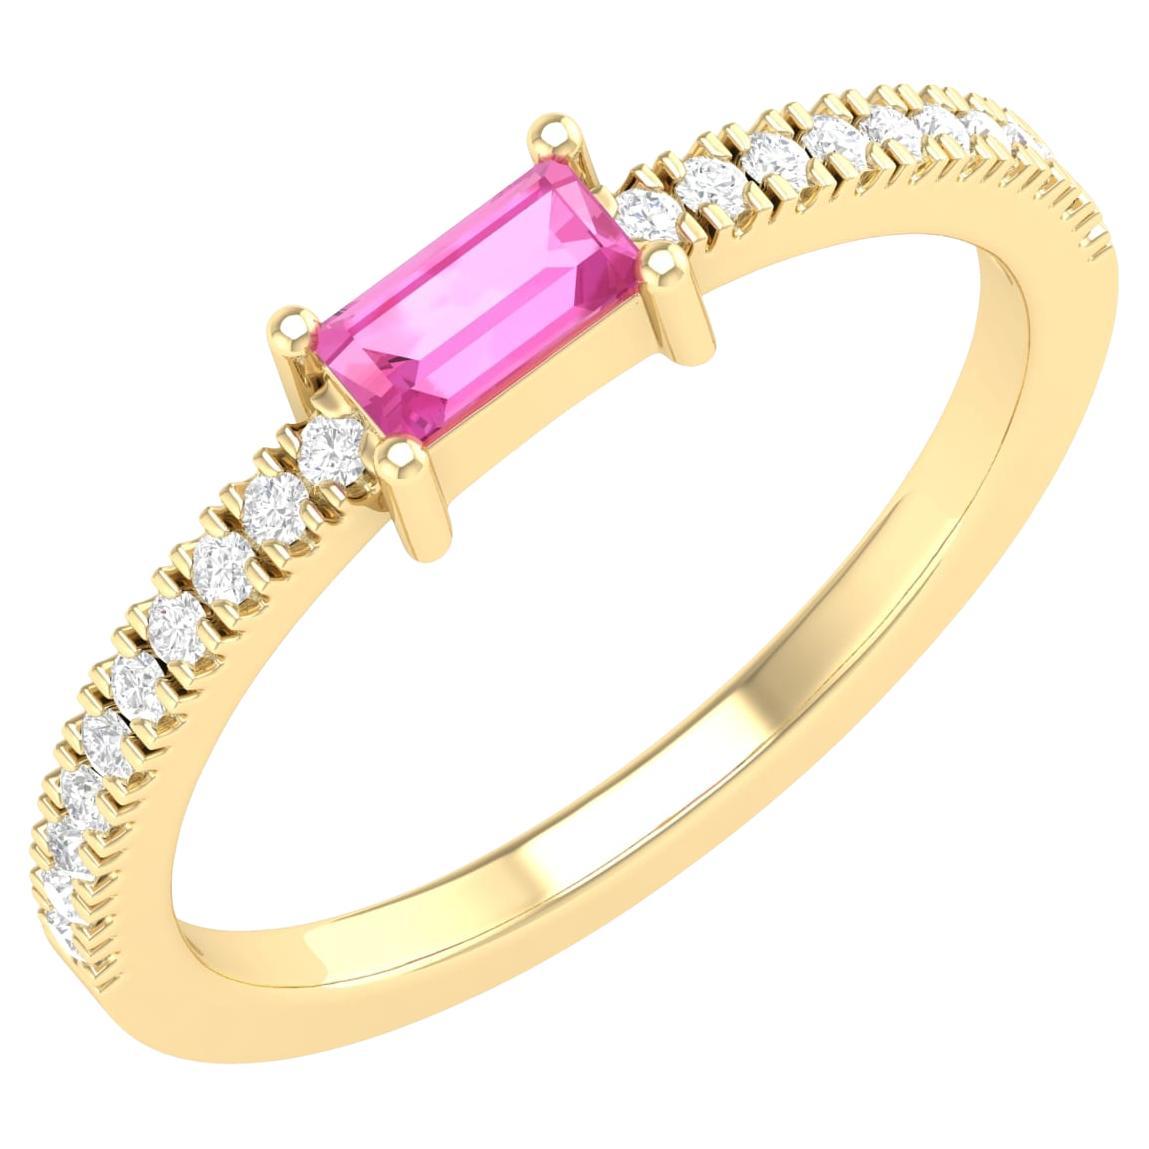 18 Karat Yellow Gold 0.4 Carat Pink Sapphire Infinity Band Ring